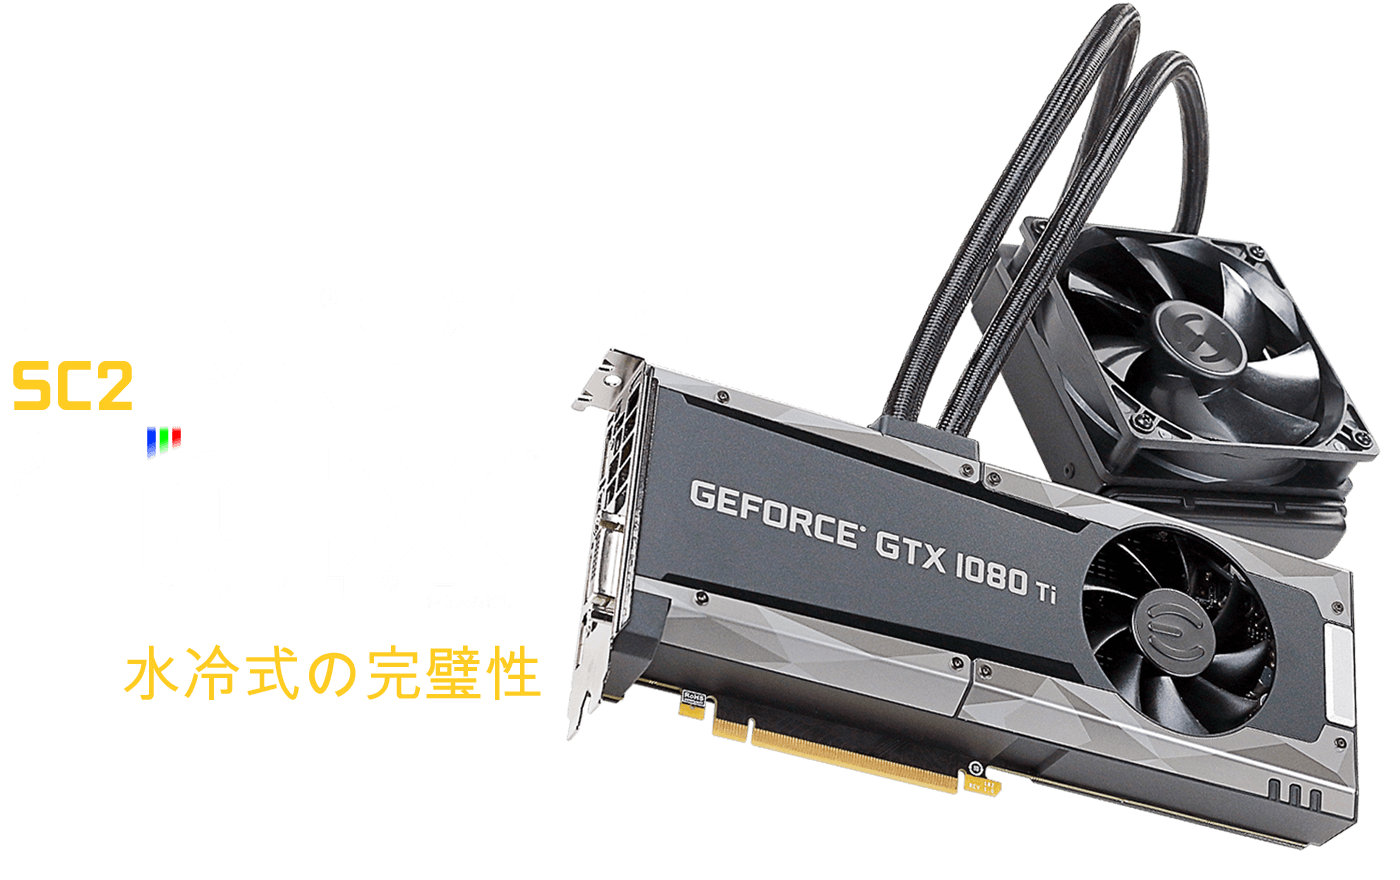 GeForce GTX 1080 Ti SC2 GAMING HYBRID